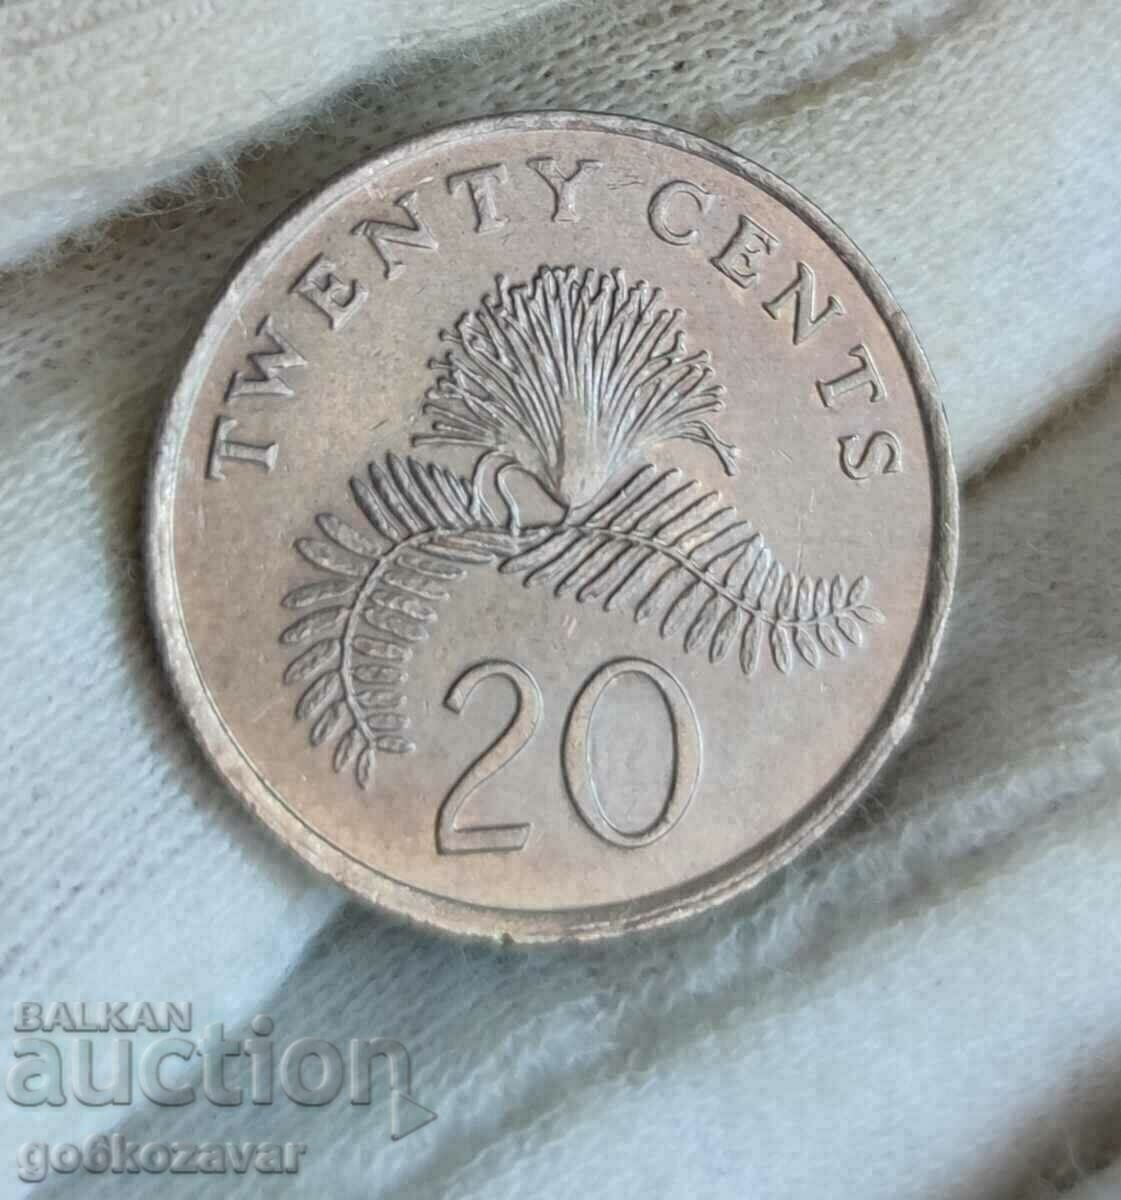 Singapore 20 cents 1985